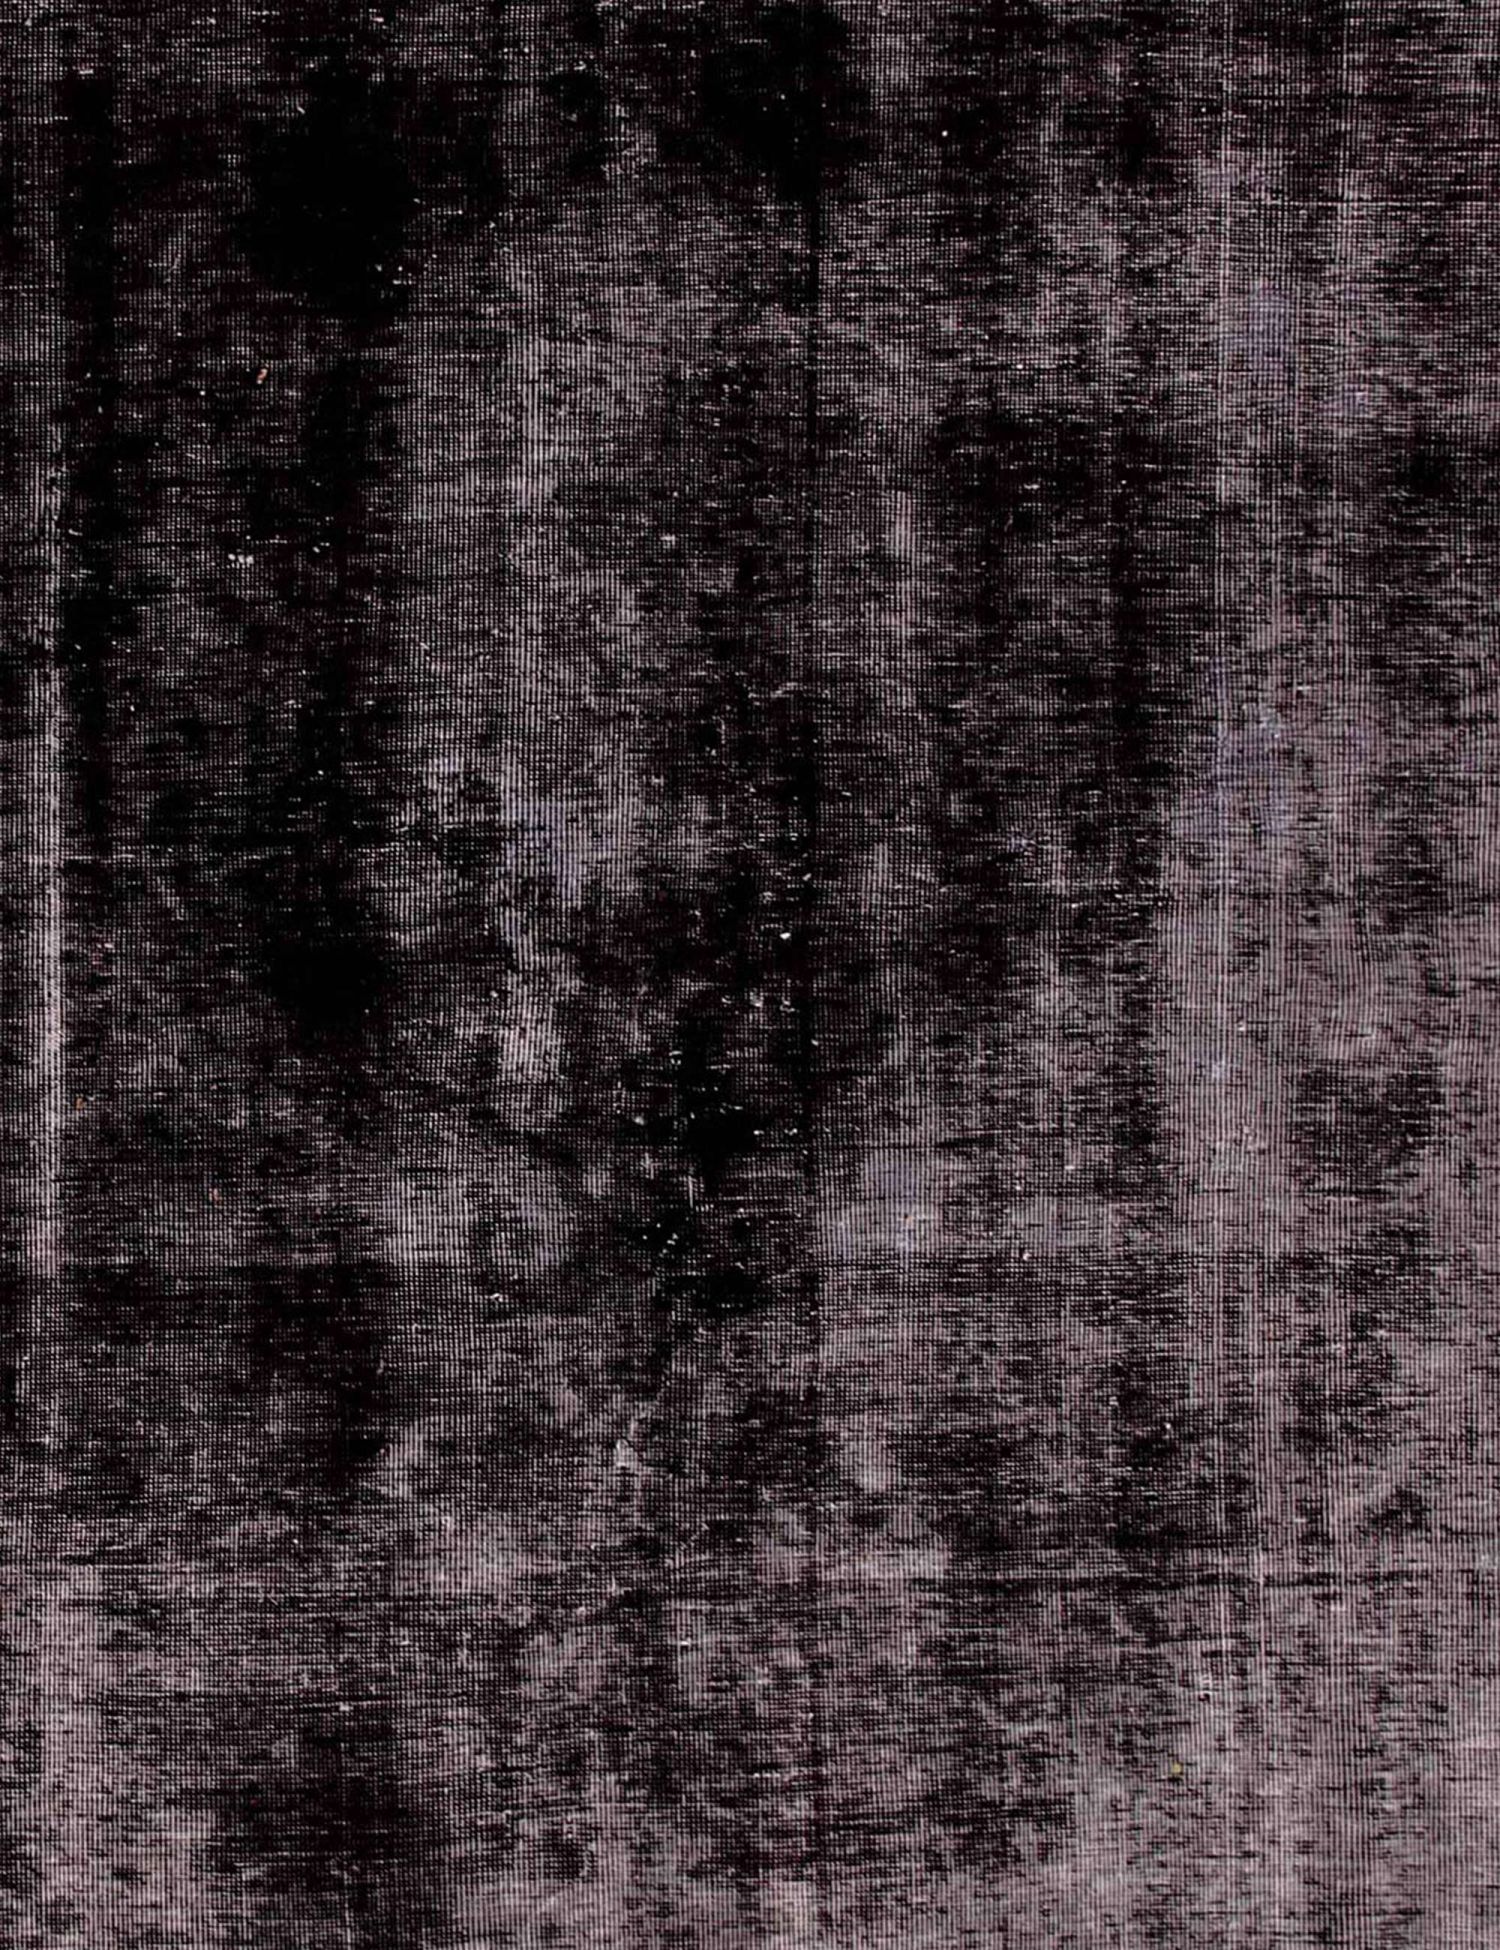 Persischer Vintage Teppich  schwarz <br/>180 x 180 cm